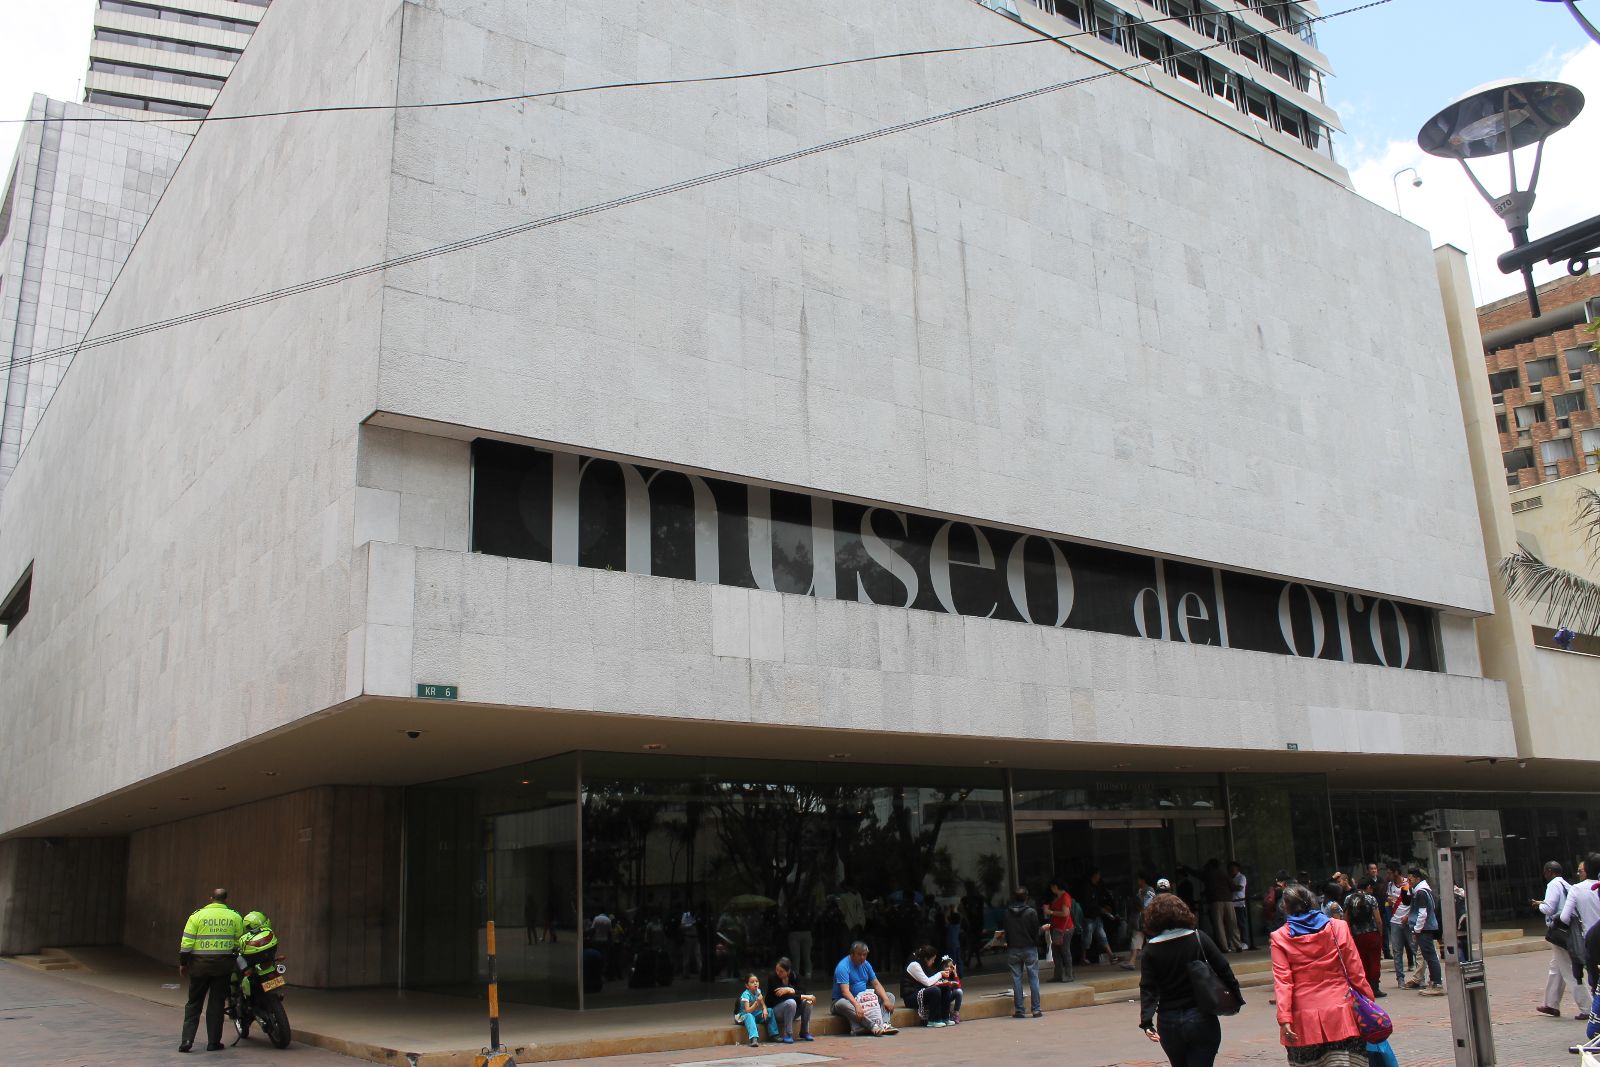 El Museo del Oro de Bogotá te sorprenderá